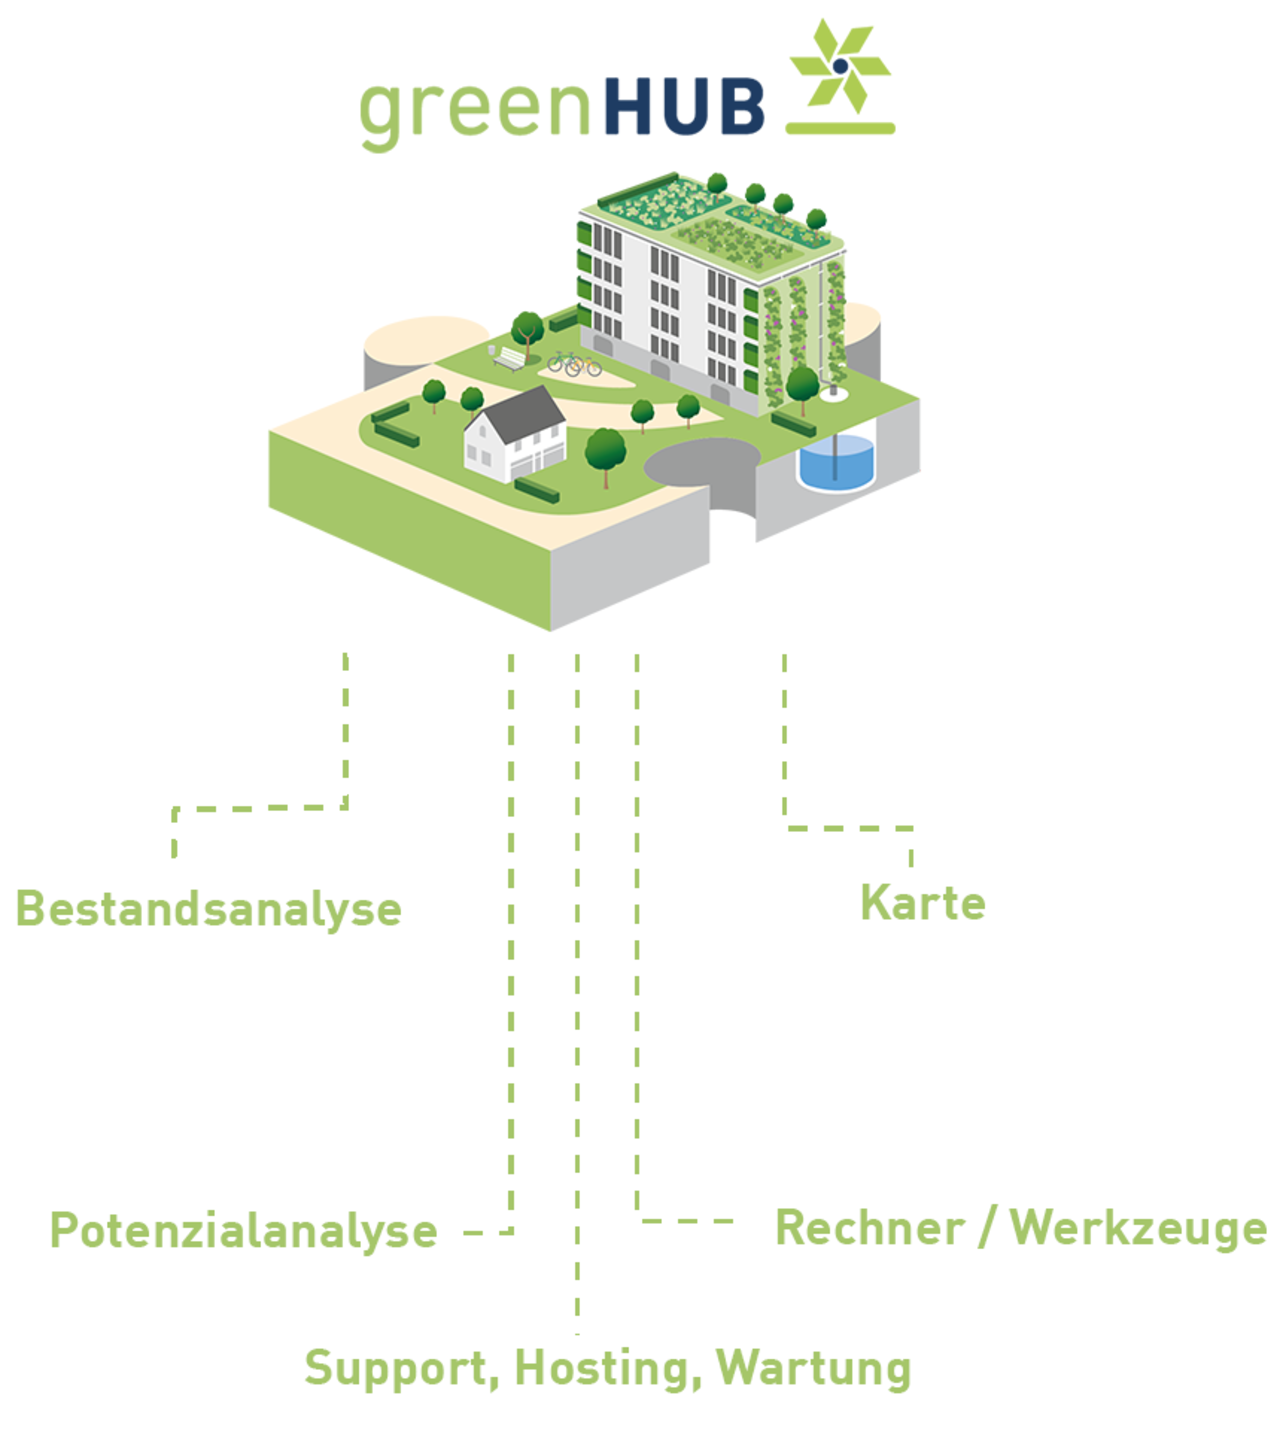 greenHUB-Verlaufsgrafik von IP SYSCON mit Dienstleistungen zur Klimaanpassung